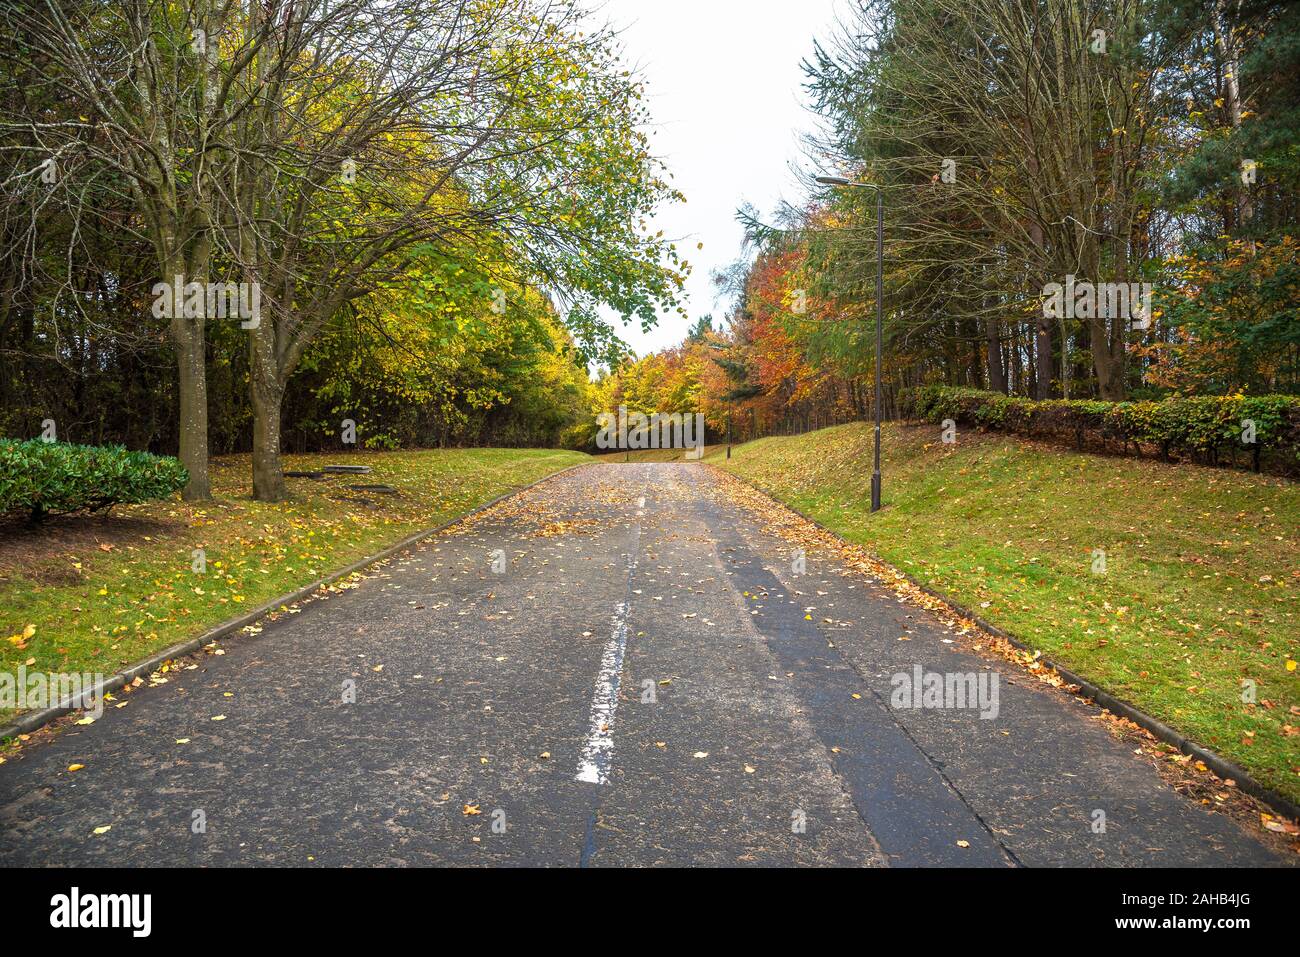 Leer, mit Bäumen gesäumten Straße in Blätter an einem bewölkten Herbst Tag abgedeckt Stockfoto